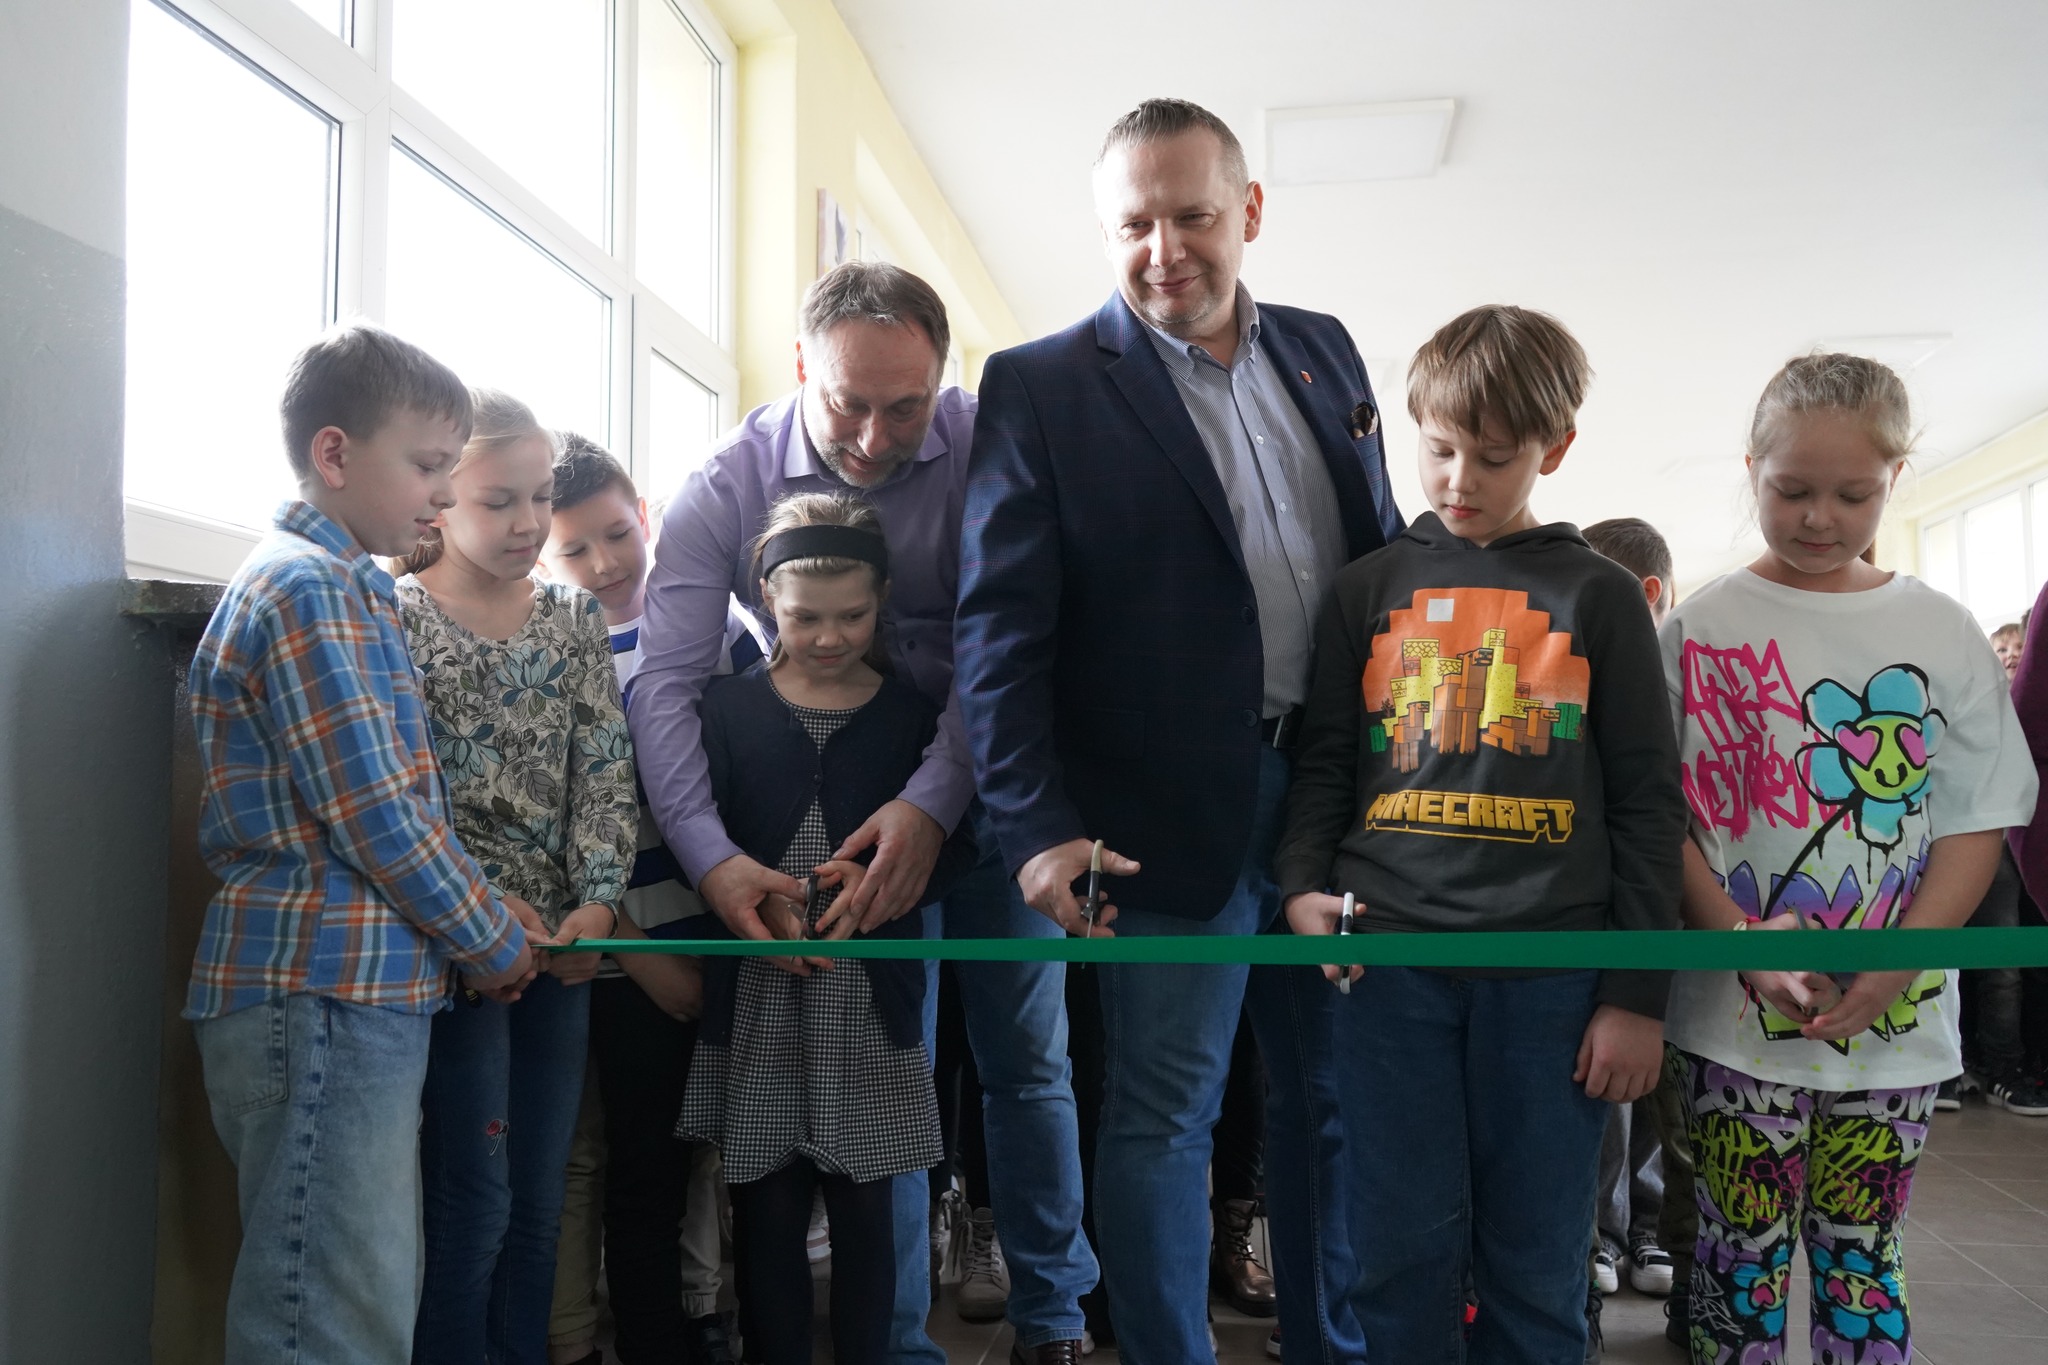 Burmistrz Koła Krzysztof Witkowski, dyrektor Marek Kujawa wraz z uczniami przecinają wstęgę